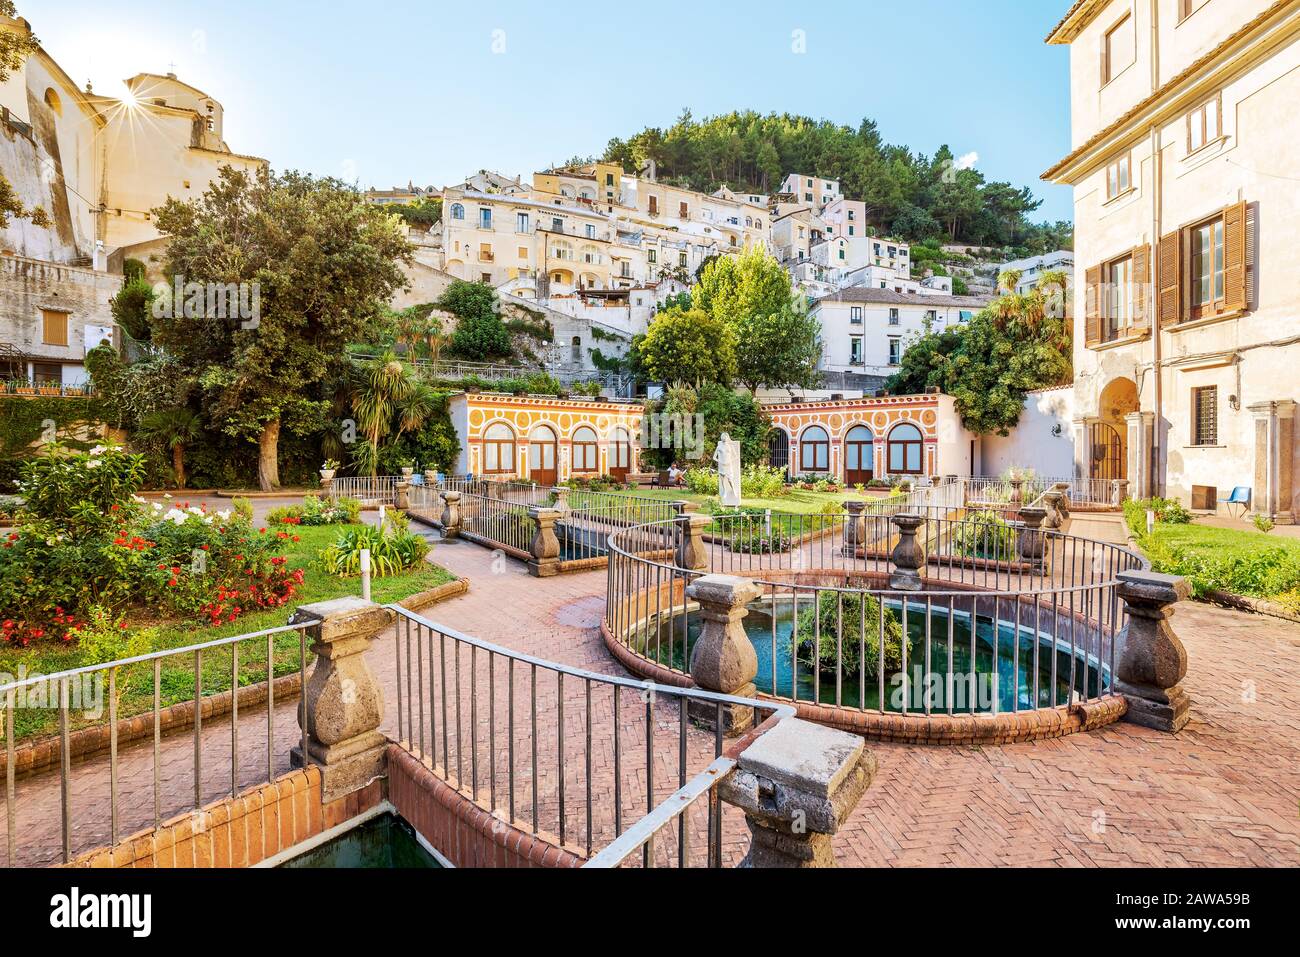 Palazzo Mezzacapo Gardens in Italy, Amalfi Coast Stock Photo